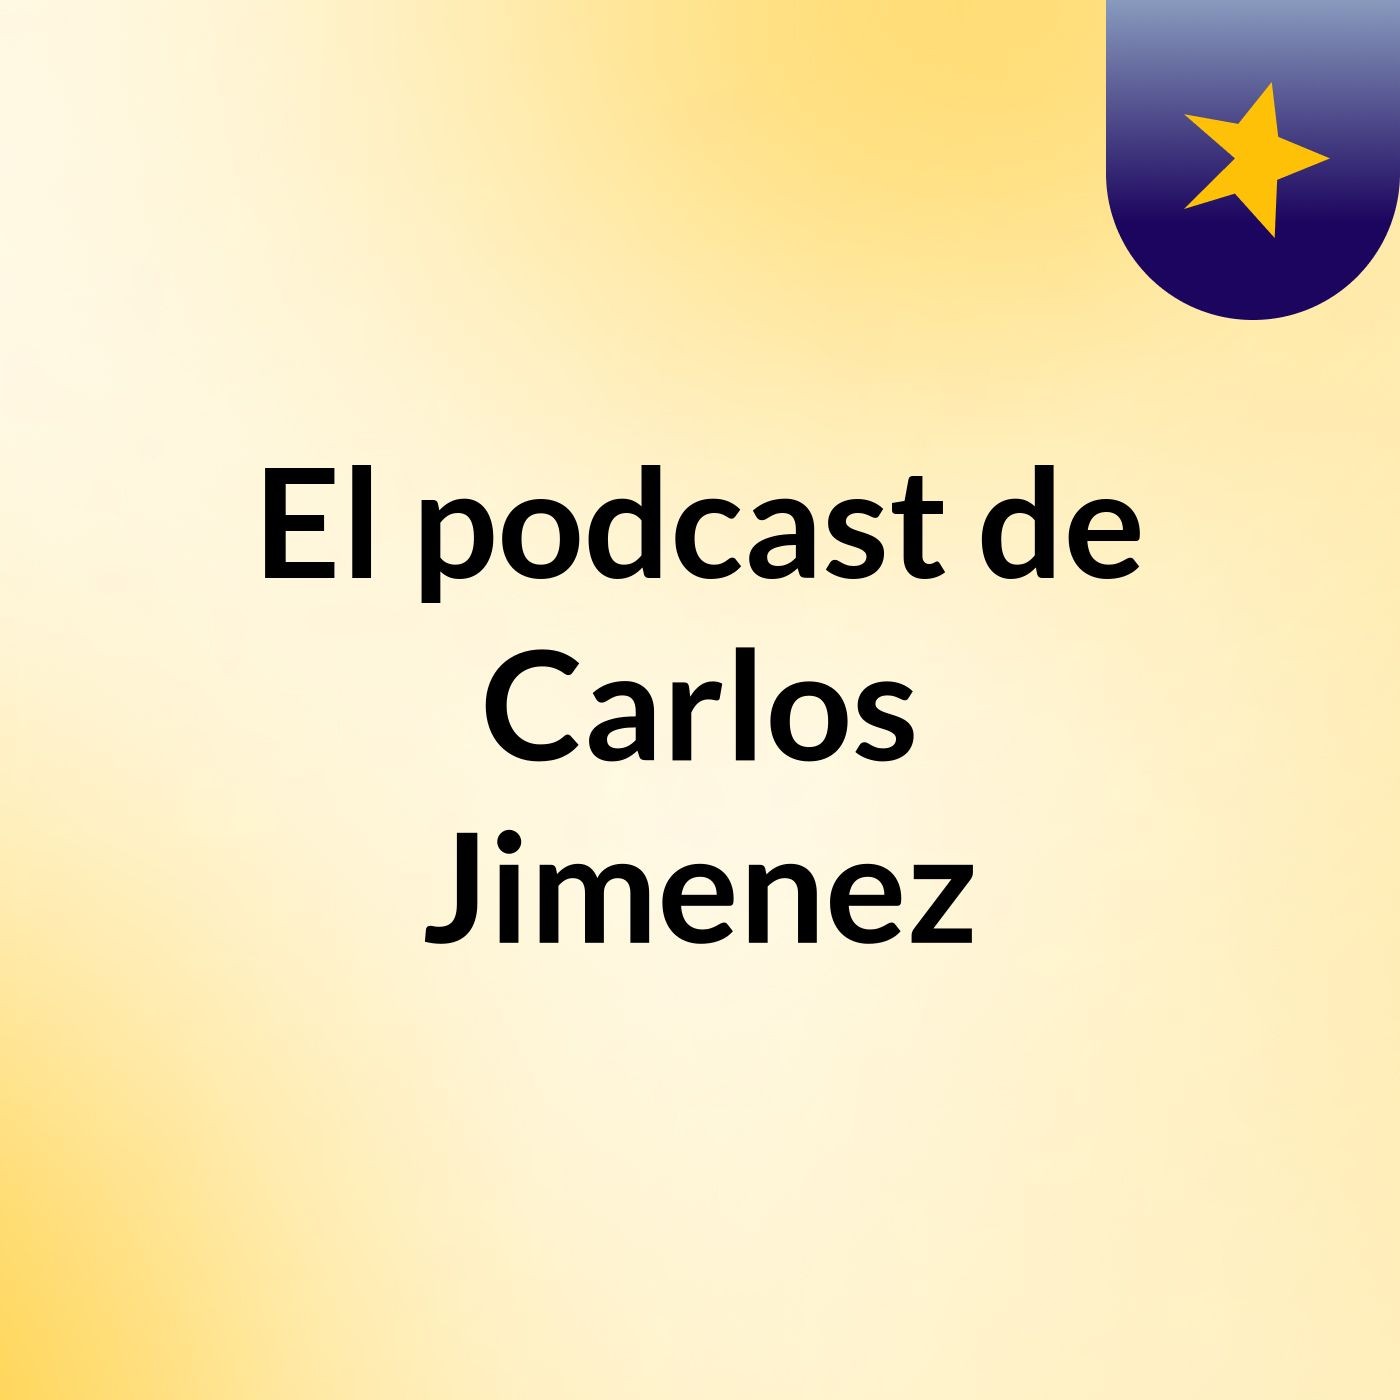 El podcast de Carlos Jimenez